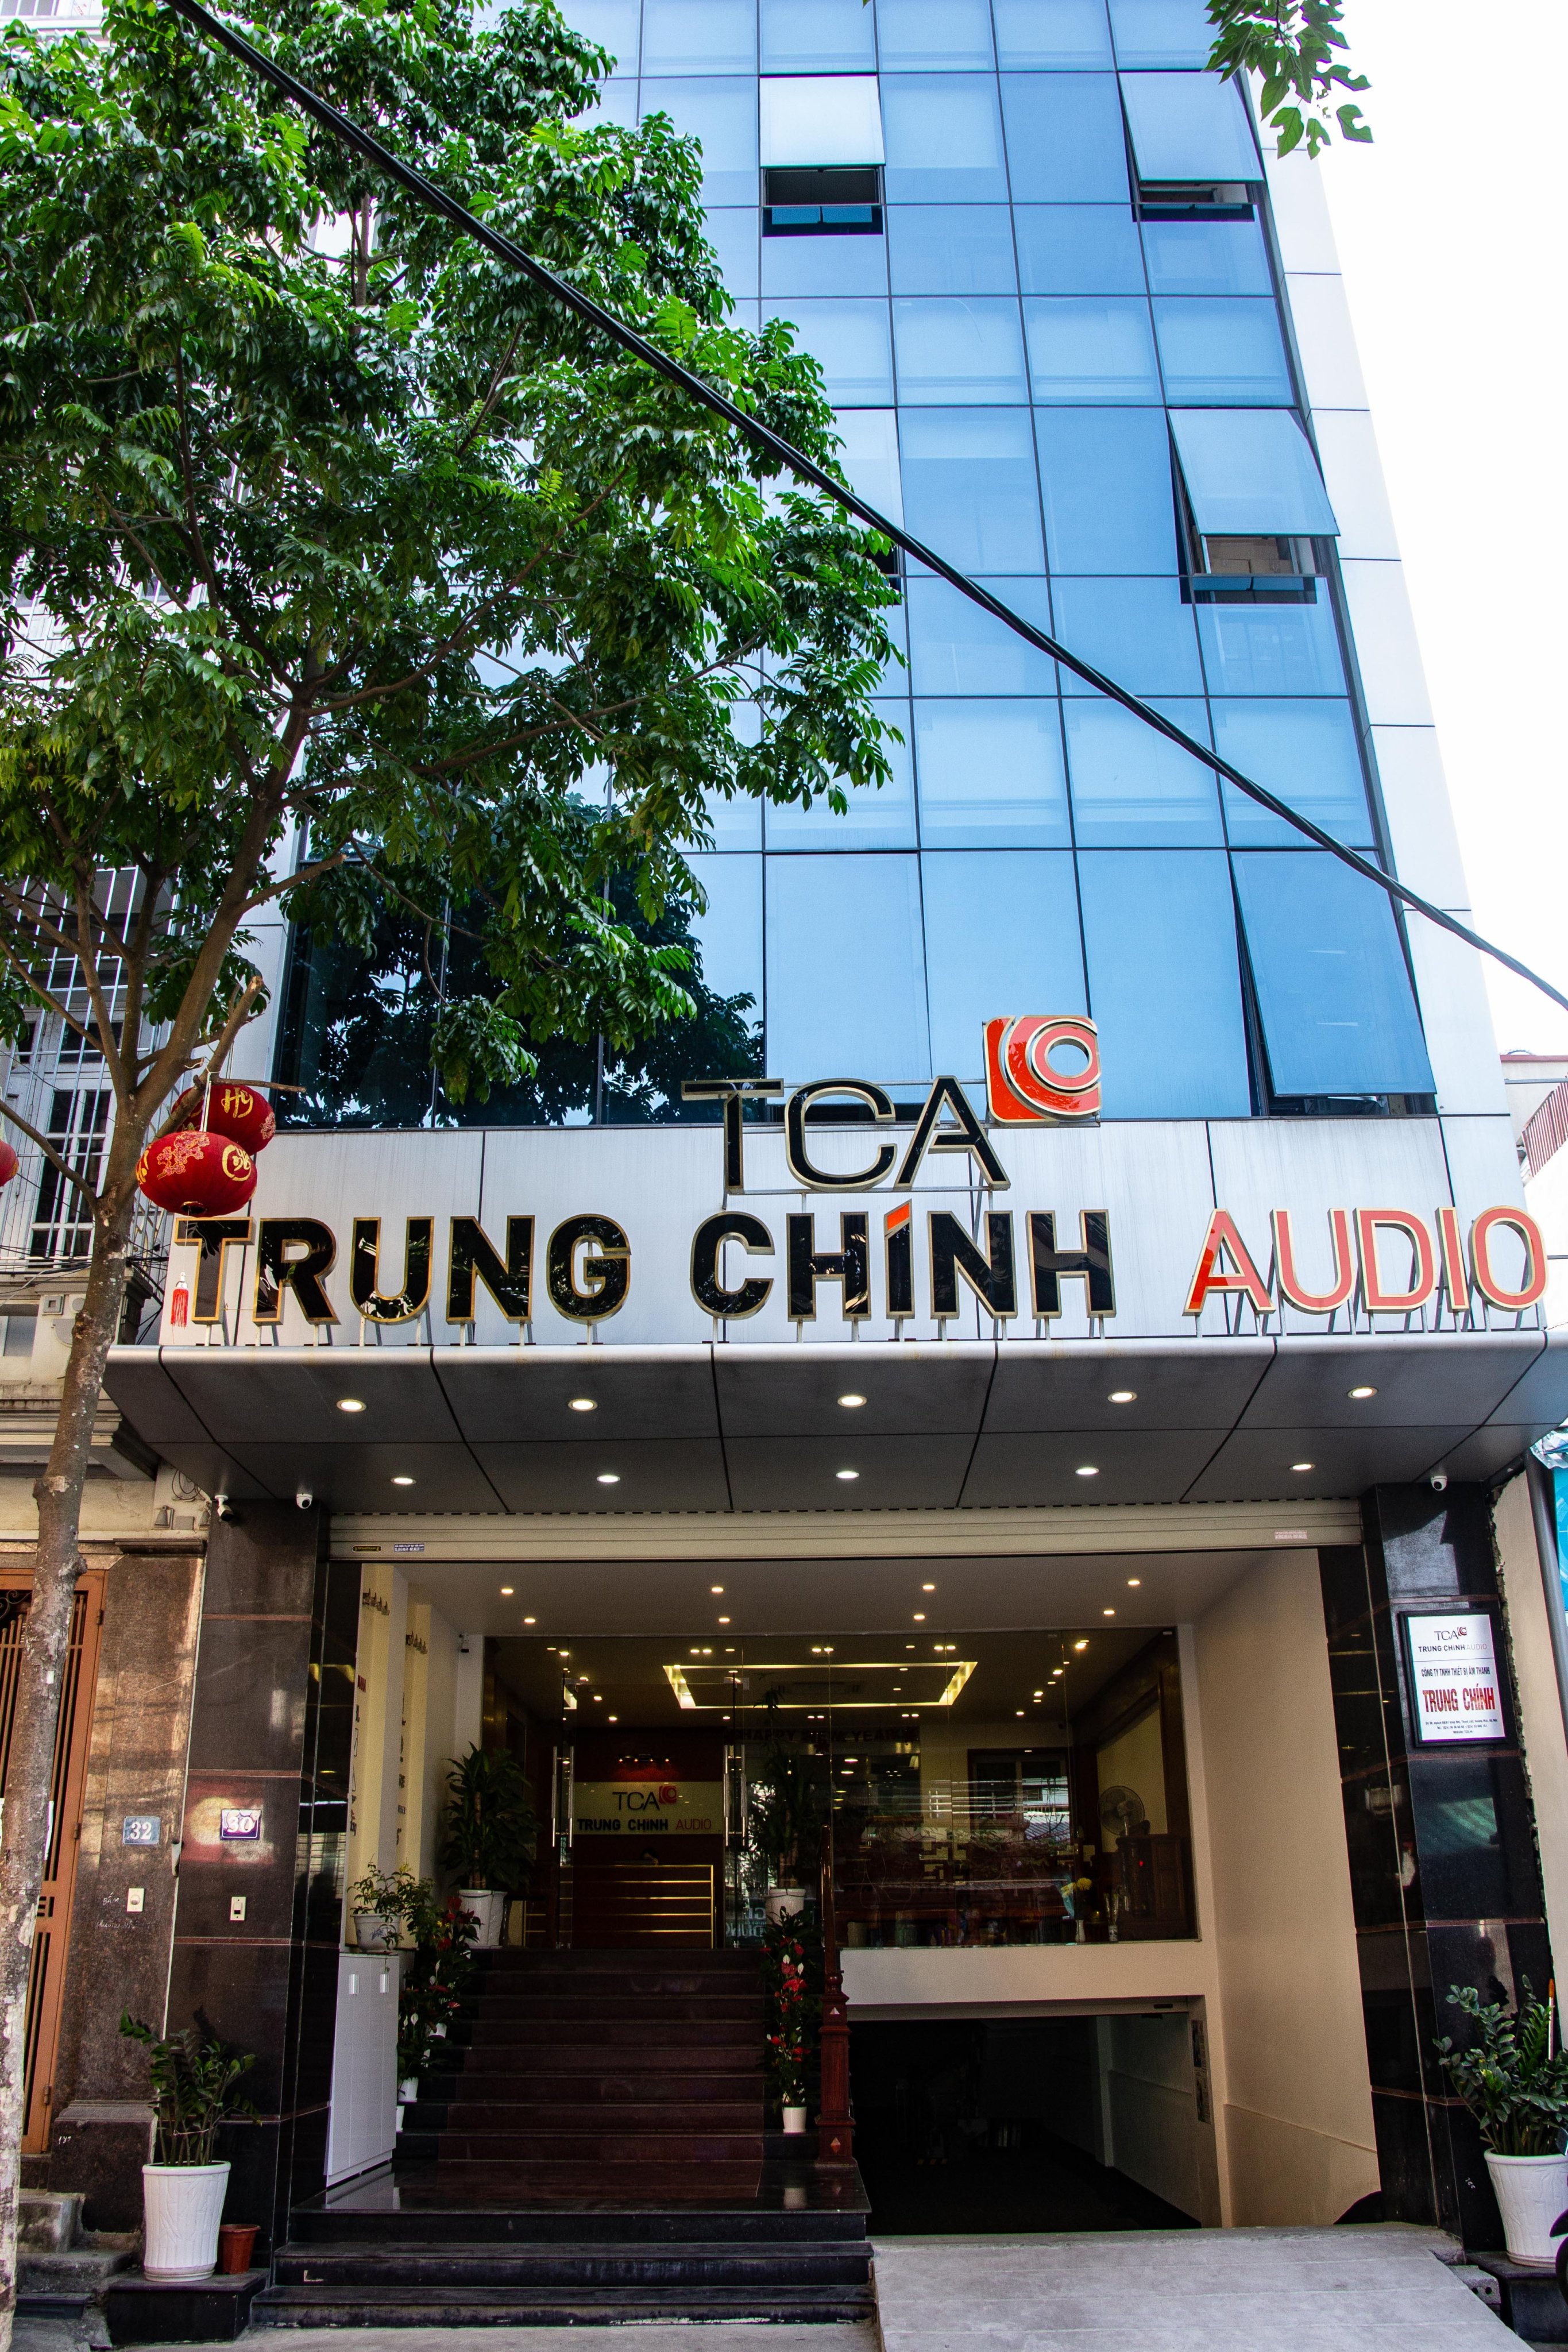 TCA - Trung Chính Audio